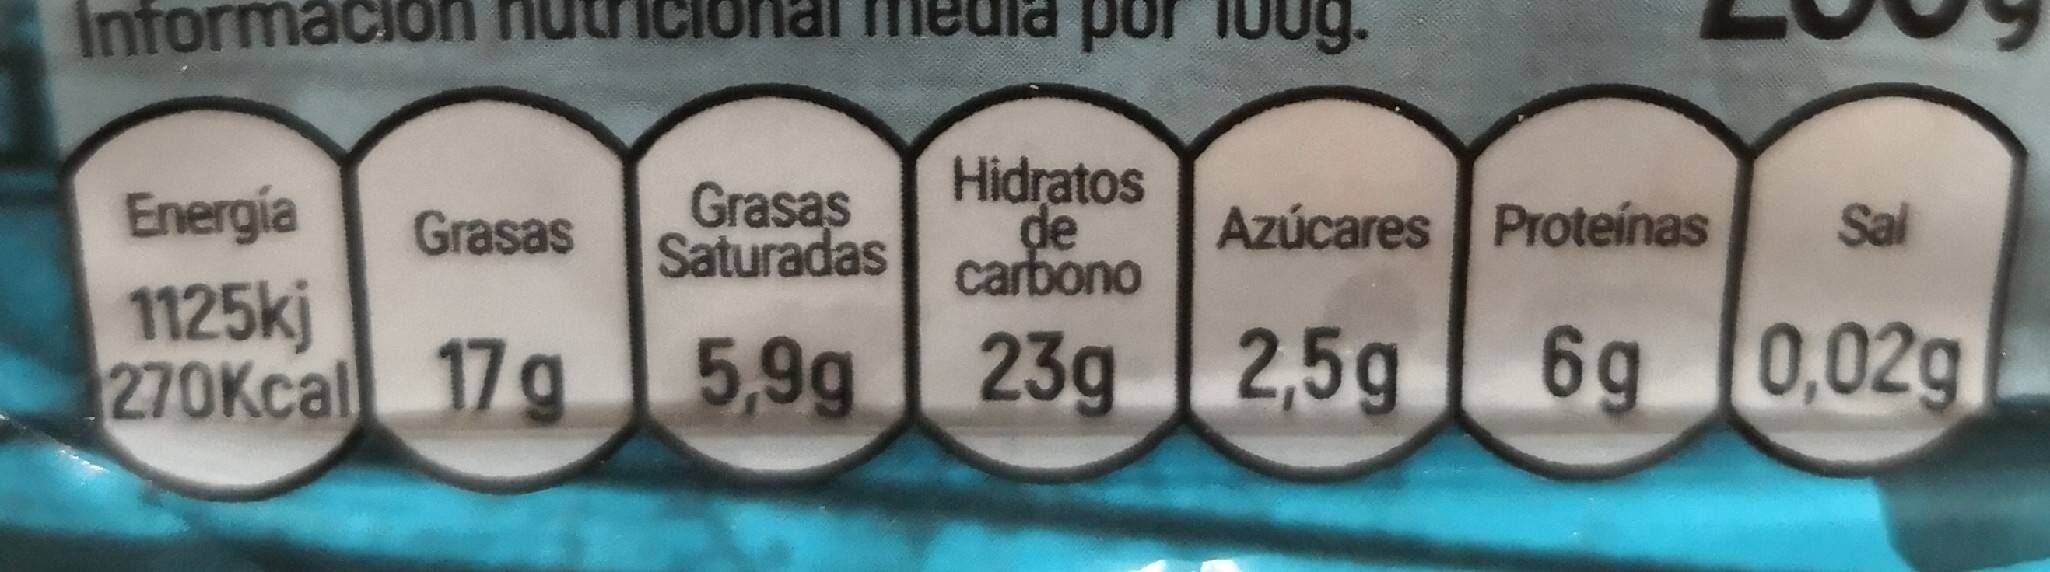 Empanada de atún - Nutrition facts - es